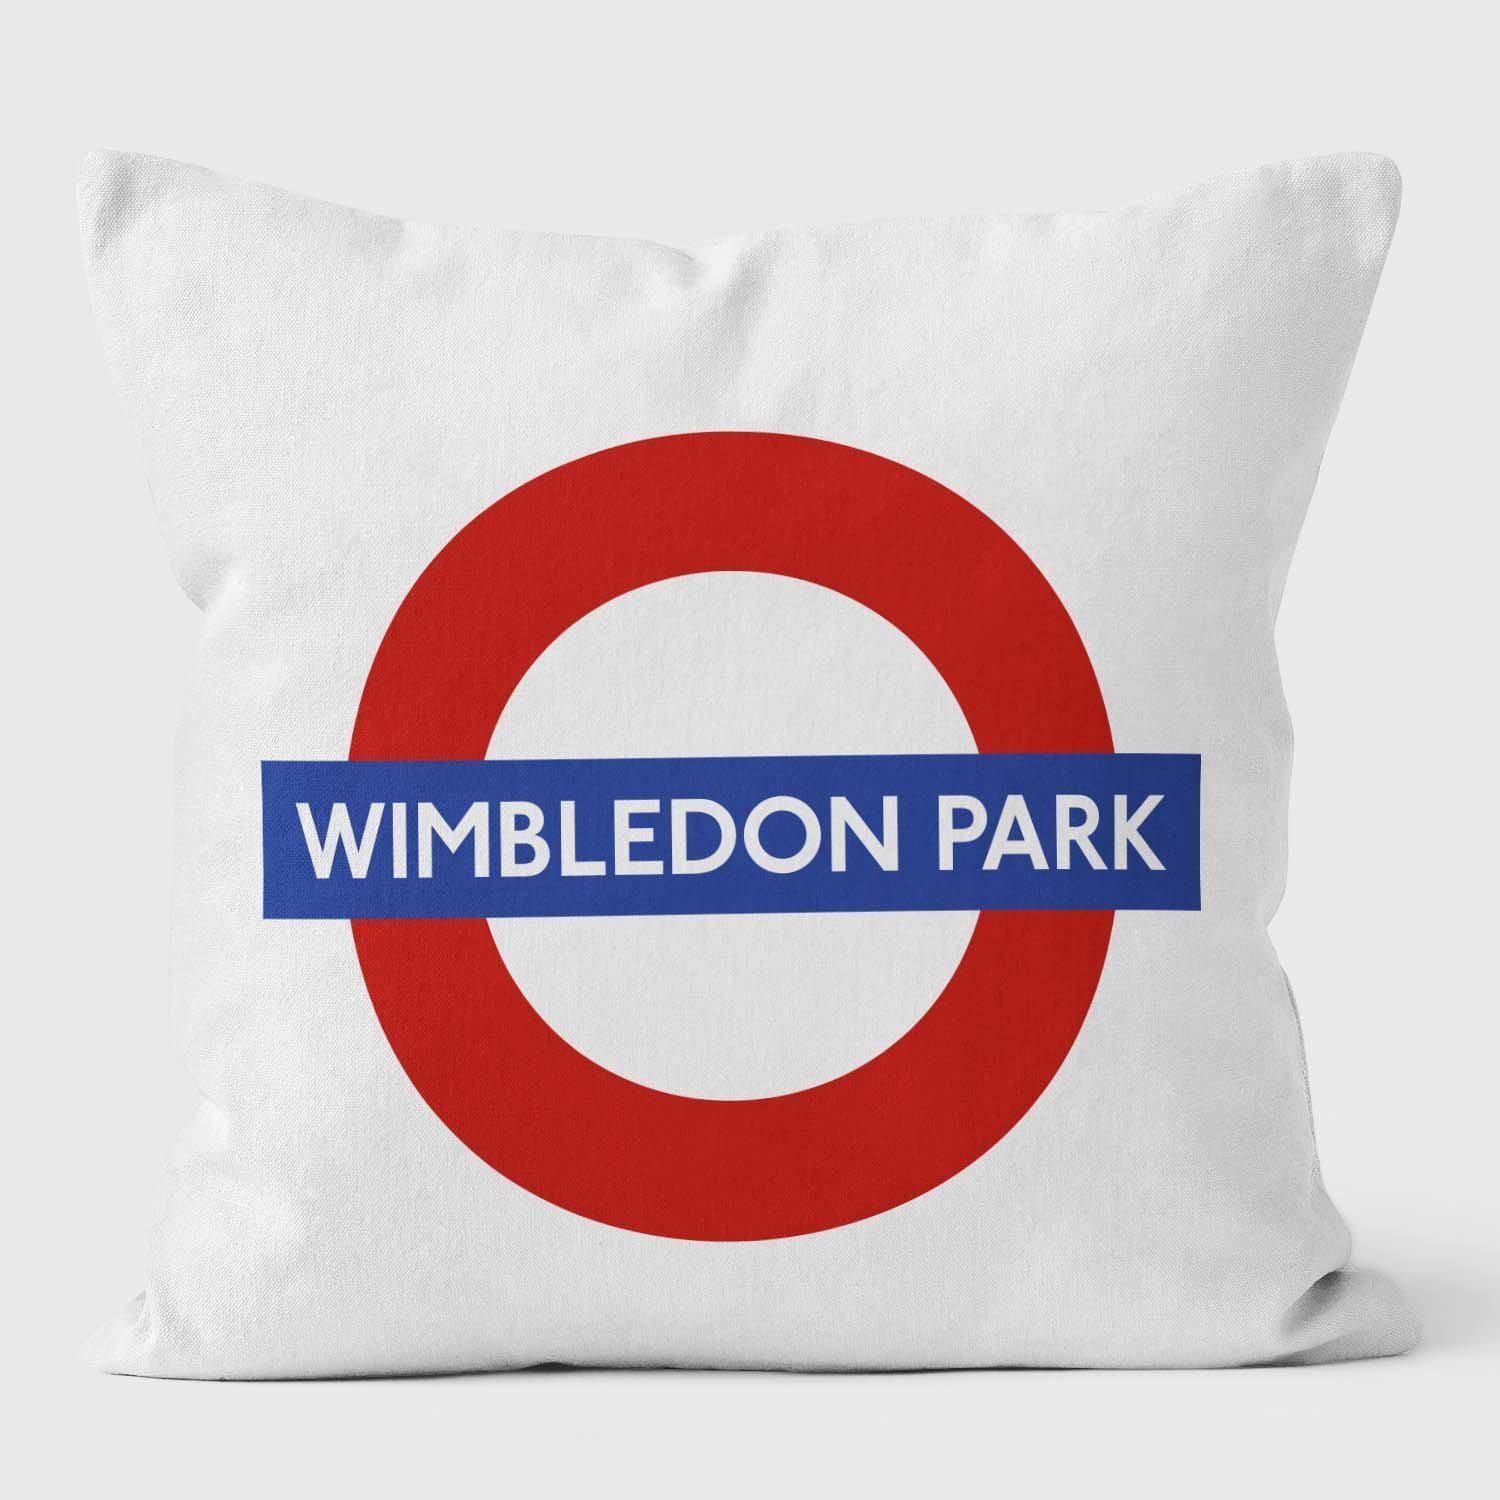 Wimbledon Park London Underground Tube Station Roundel Cushion - Handmade Cushions UK - WeLoveCushions